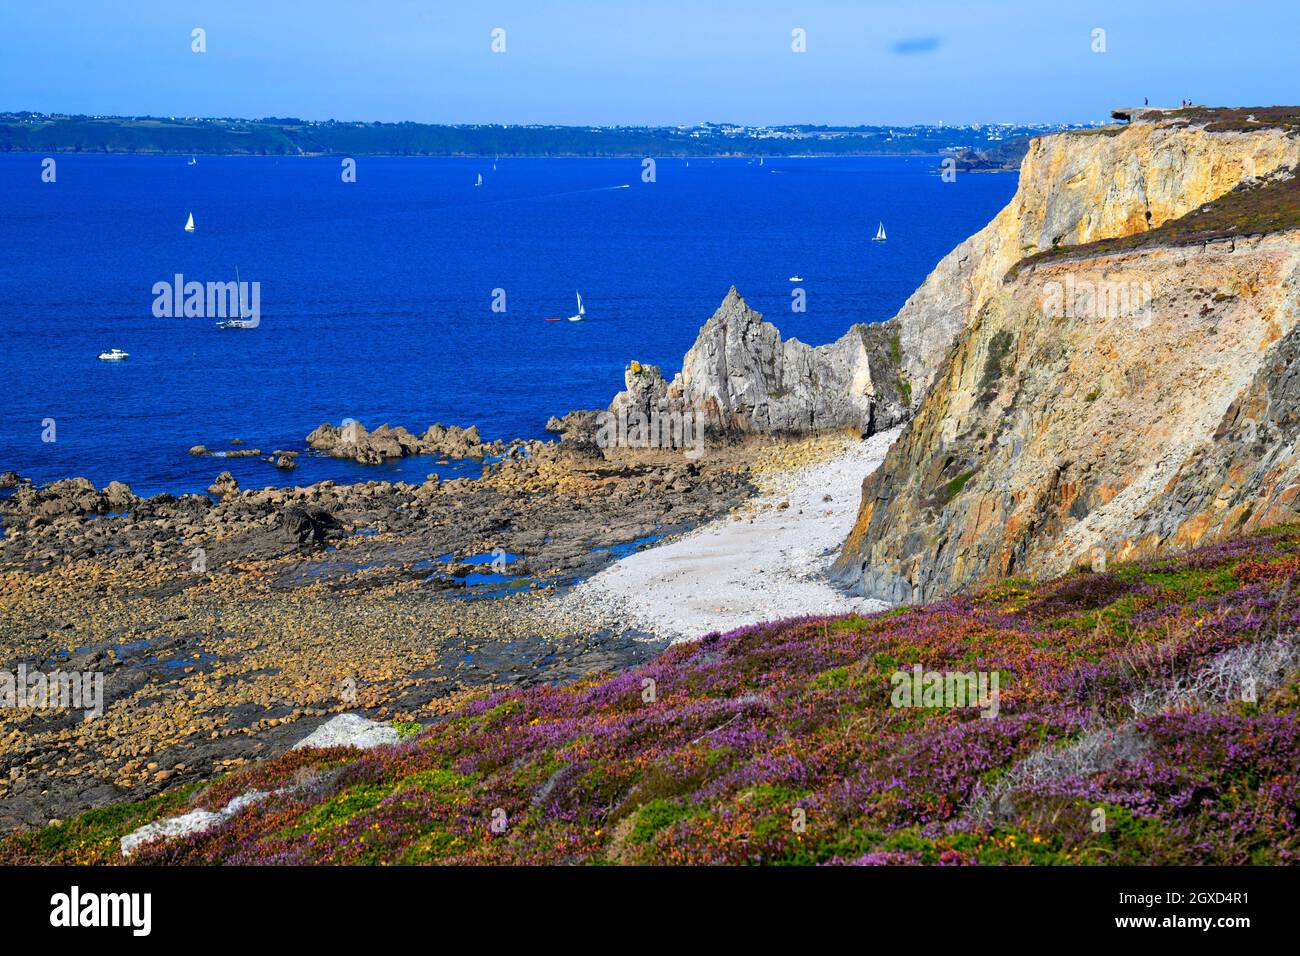 Camaret sur Mer, Presqu'ile de Crozon, Parc naturel regional d'Armorique, Brittany, Finistere department, France. Stock Photo